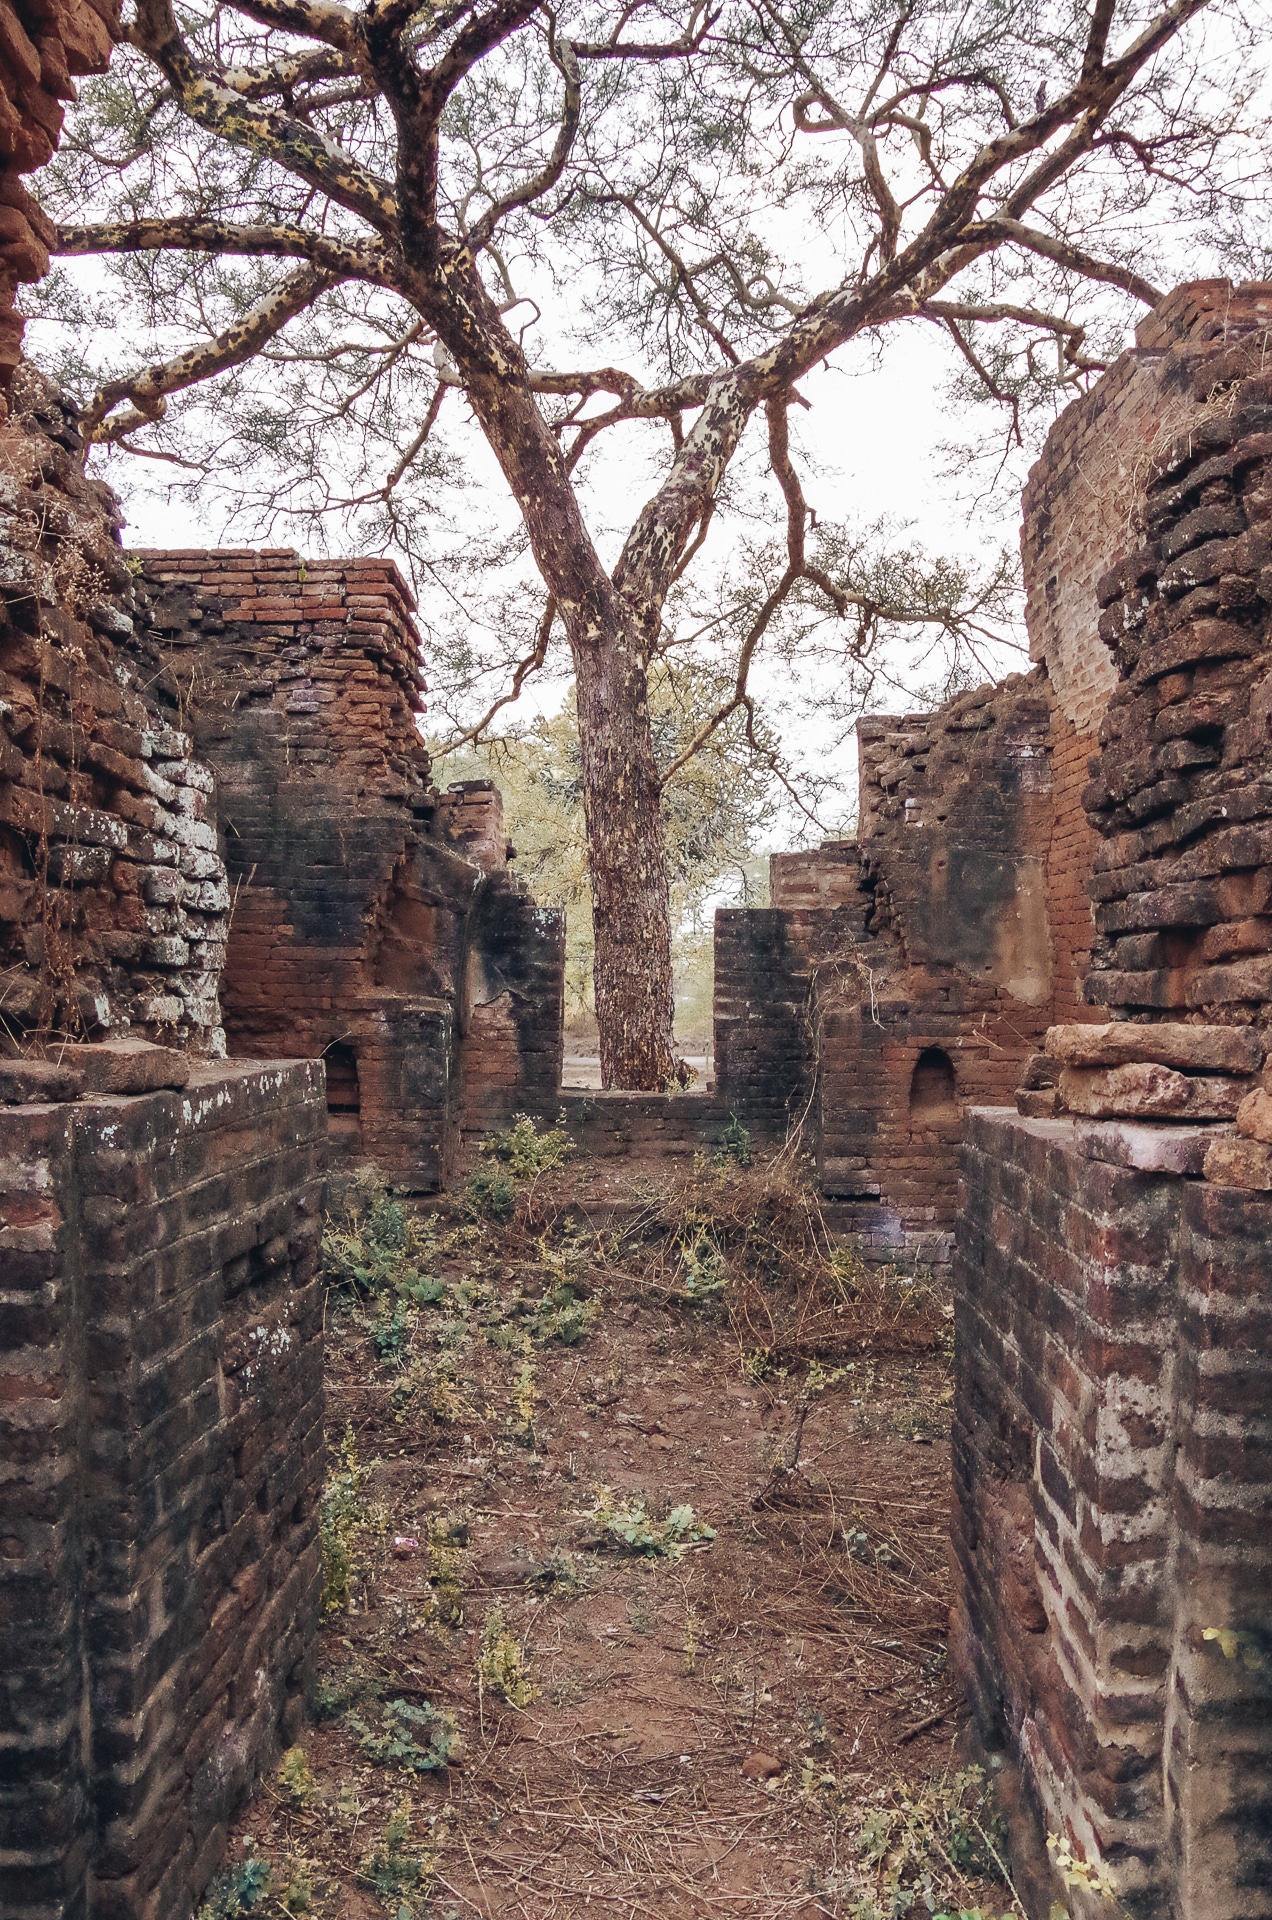 végétation au milieu de temples en ruine au Myanmar à Bagan